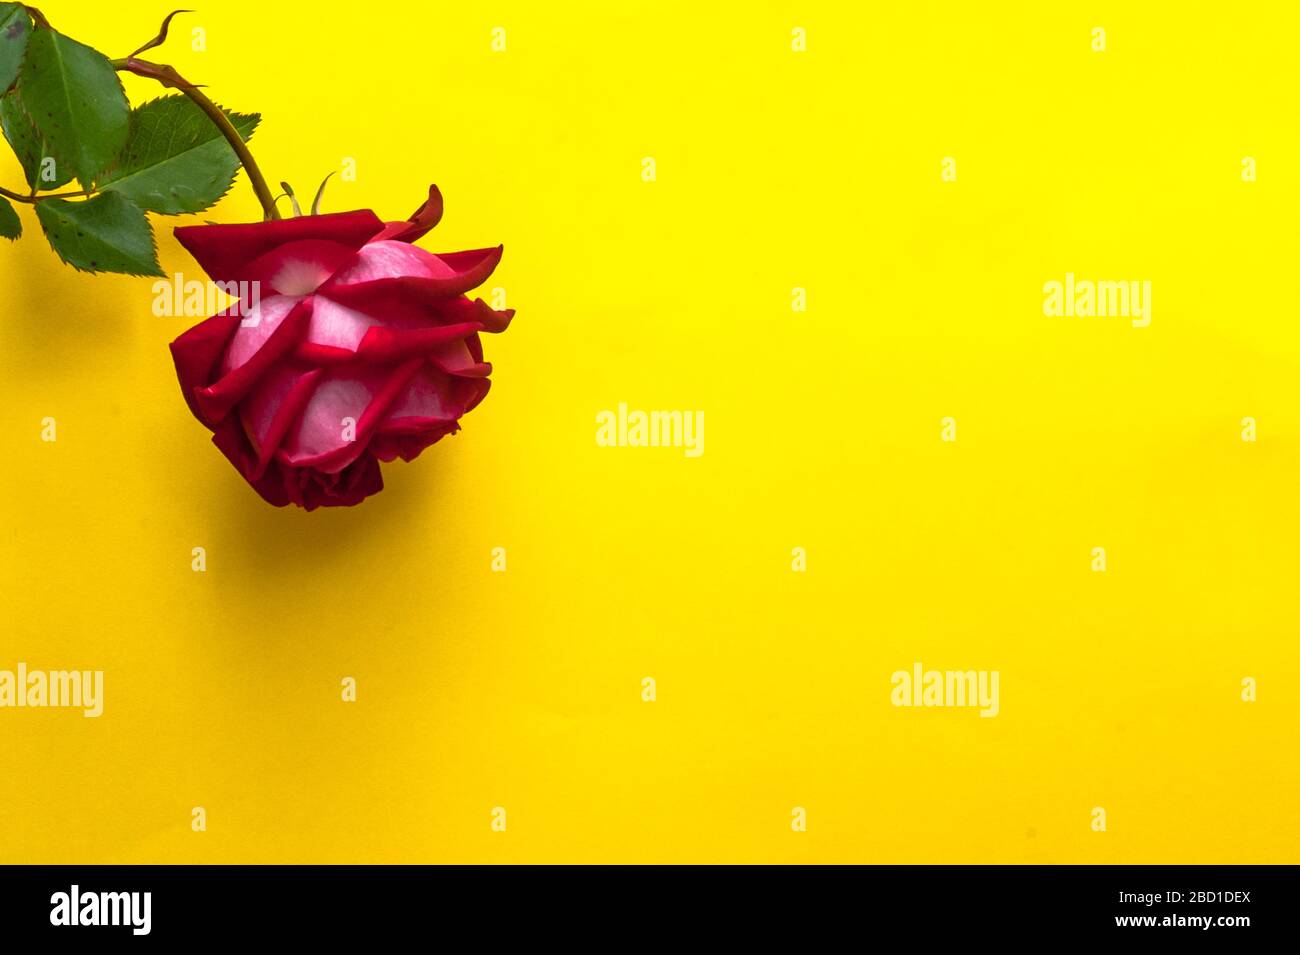 Natürliche rote Rose auf gelber Oberfläche. Stockfoto